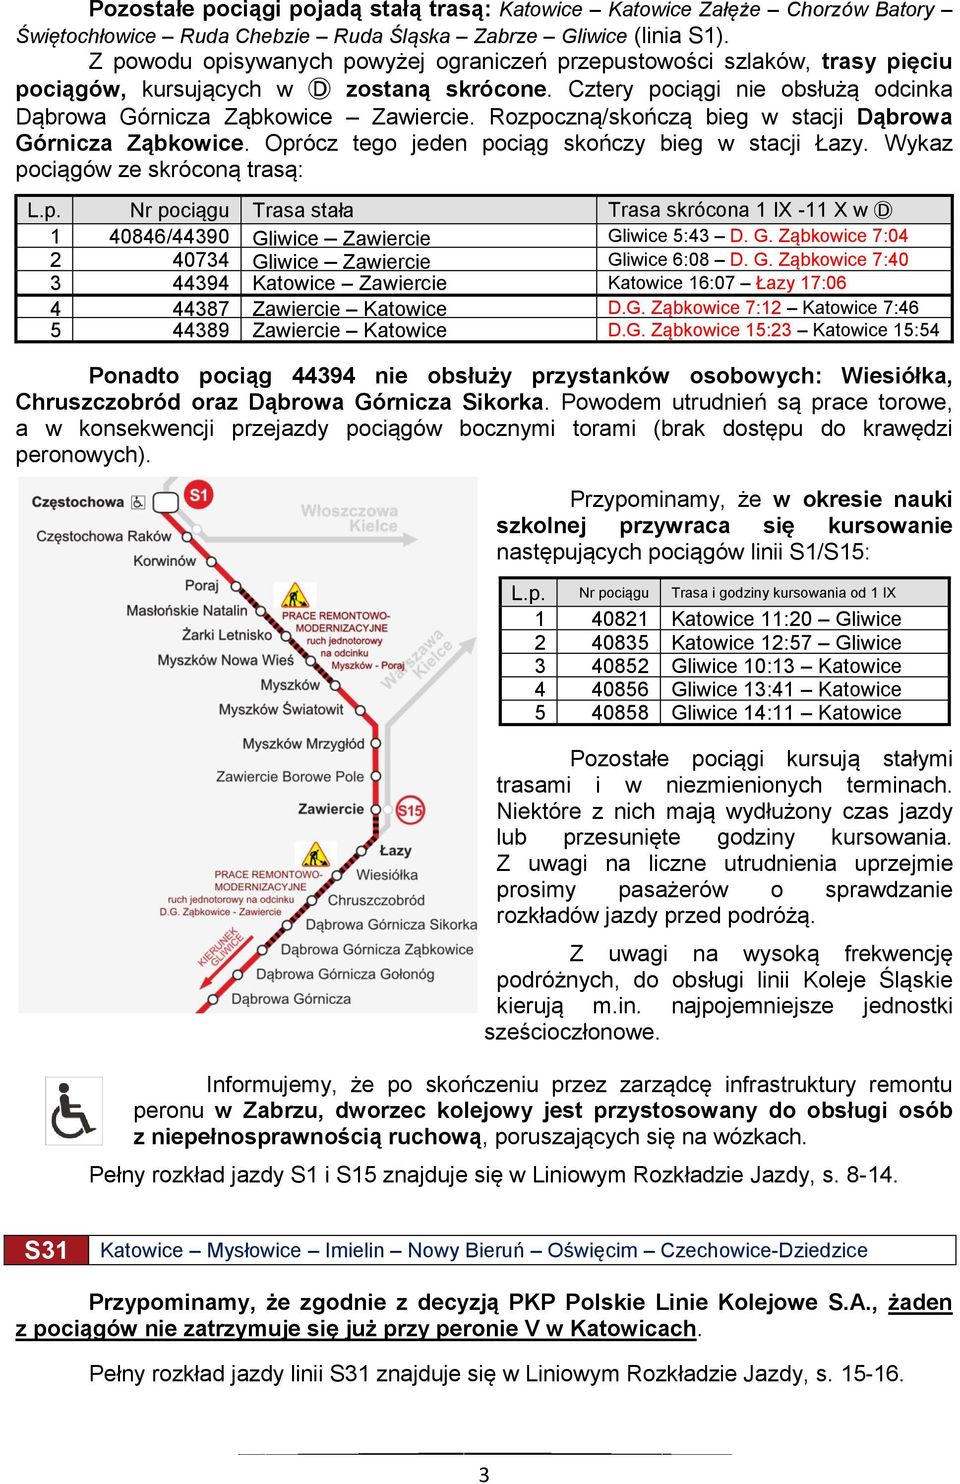 Rozpoczną/skończą bieg w stacji Dąbrowa Górnicza Ząbkowice. Oprócz tego jeden pociąg skończy bieg w stacji Łazy. Wykaz pociągów ze skróconą trasą: L.p. Nr pociągu Trasa stała Trasa skrócona 1 IX -11 X w D 1 40846/44390 Gliwice Zawiercie Gliwice 5:43 D.